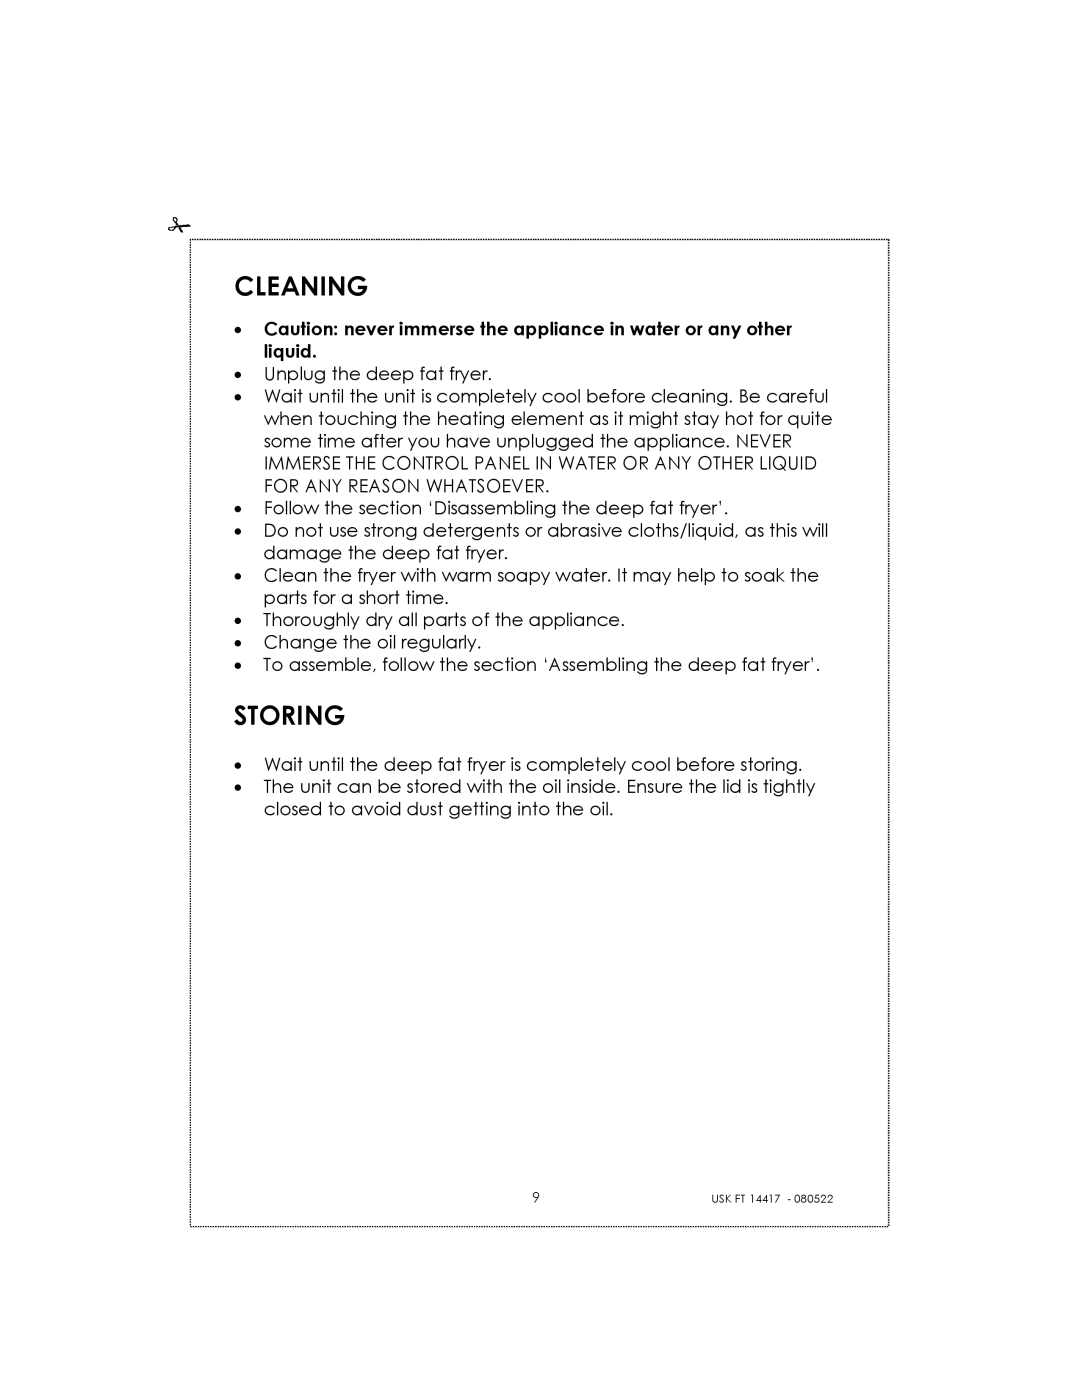 Kalorik USK FT 14417 manual Cleaning, Storing 